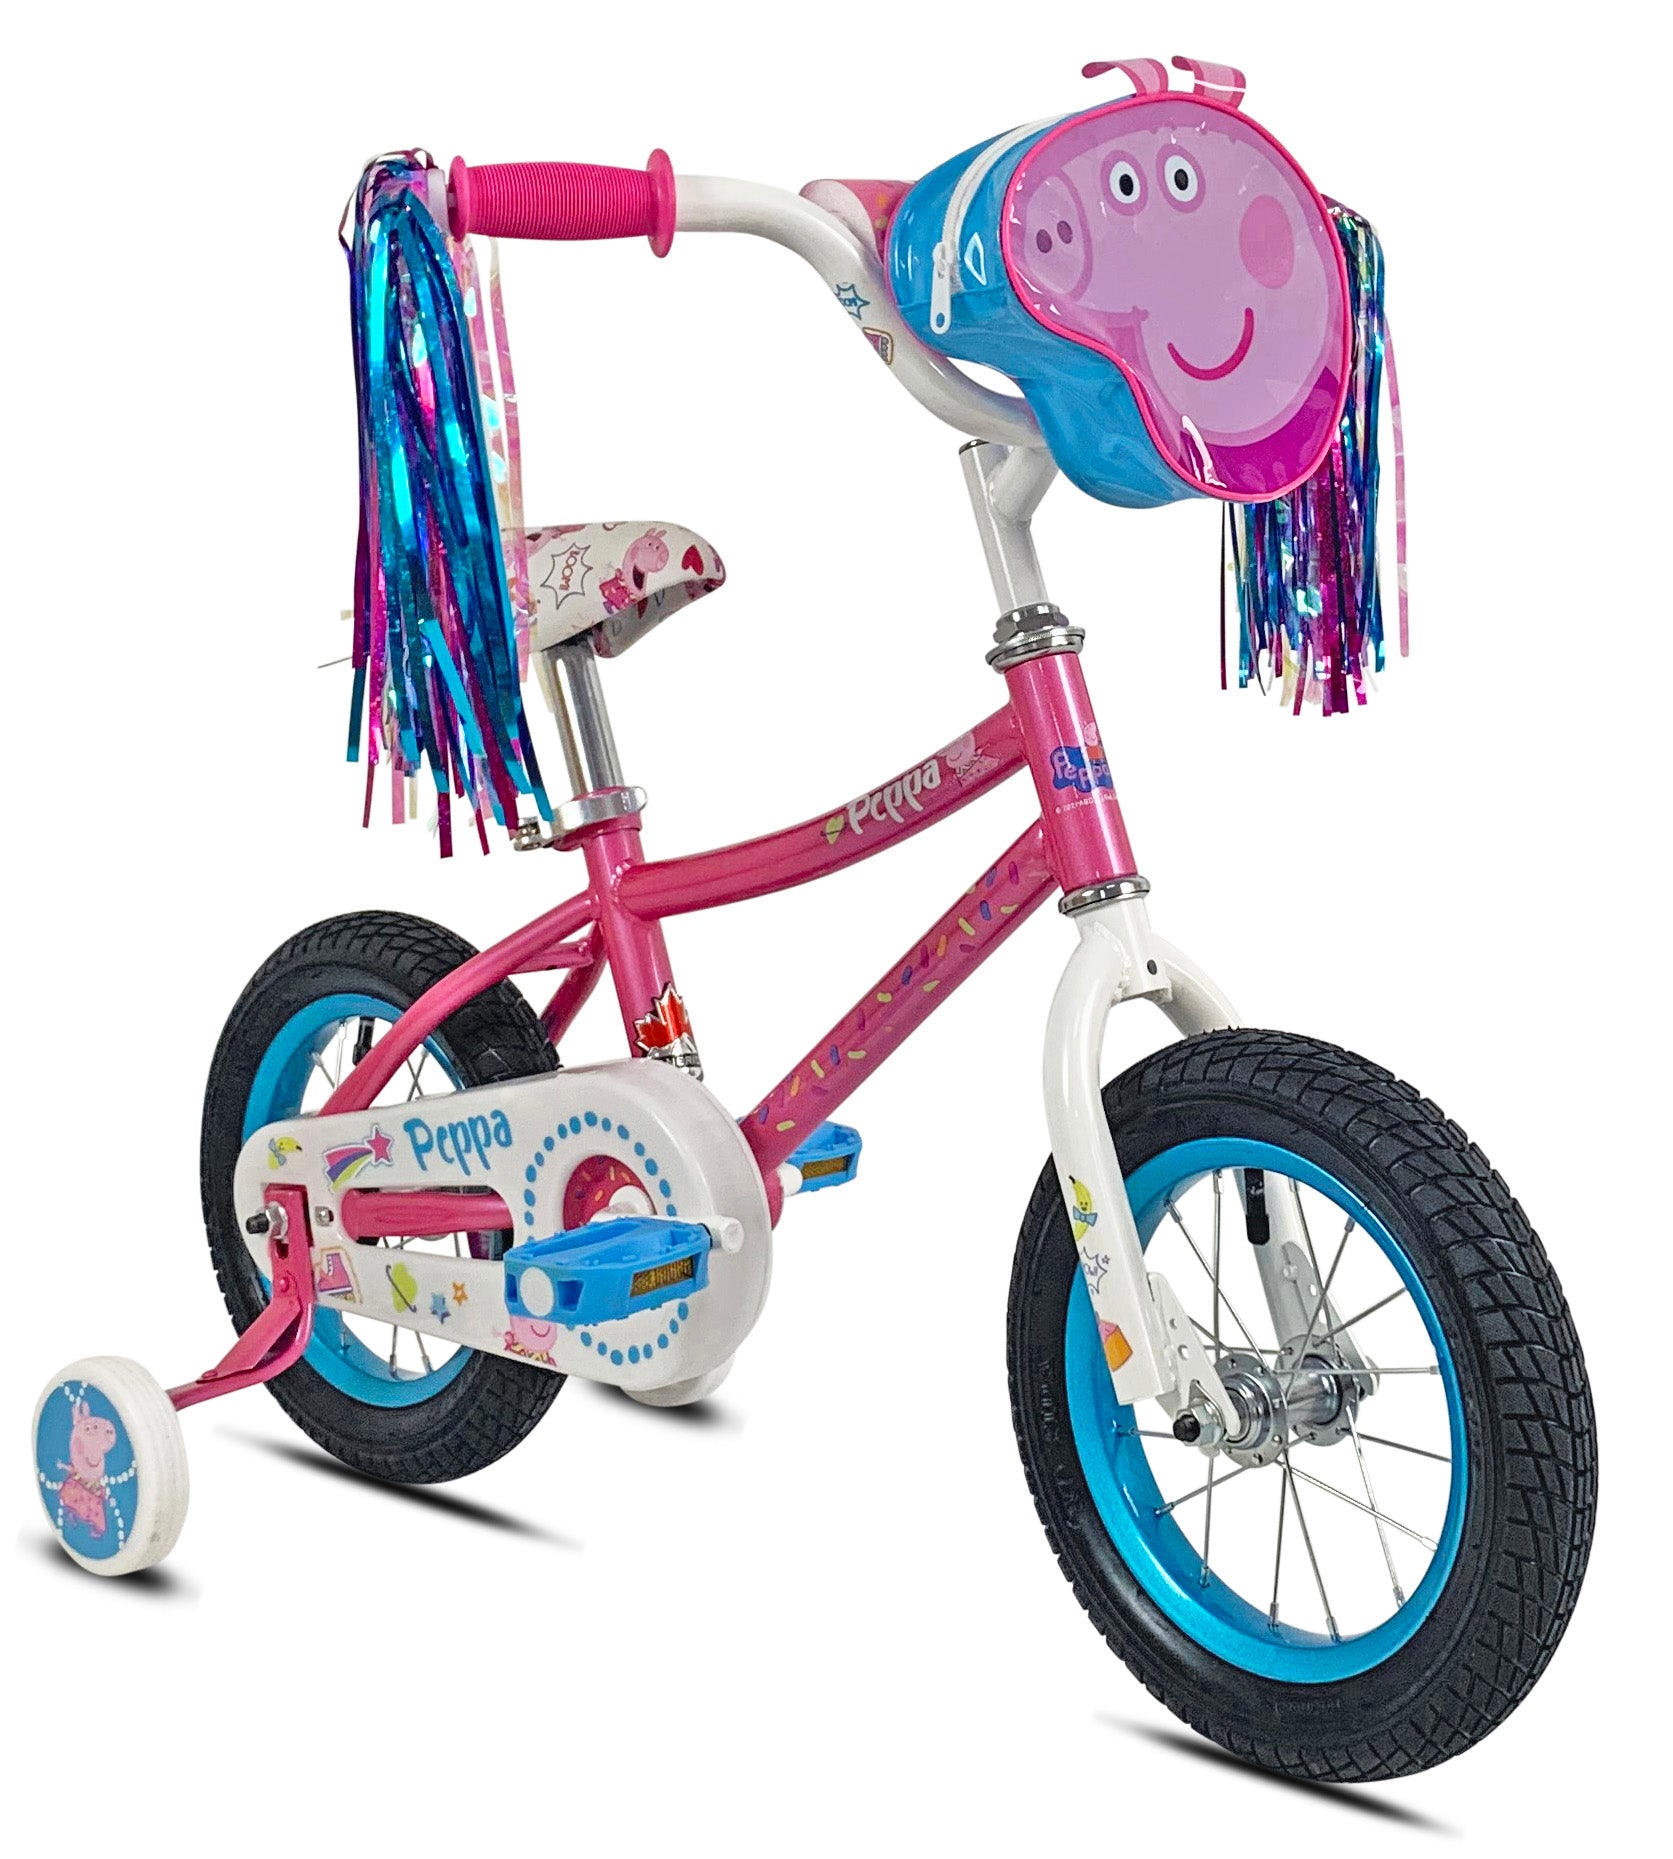 12" Peppa Pig Bike